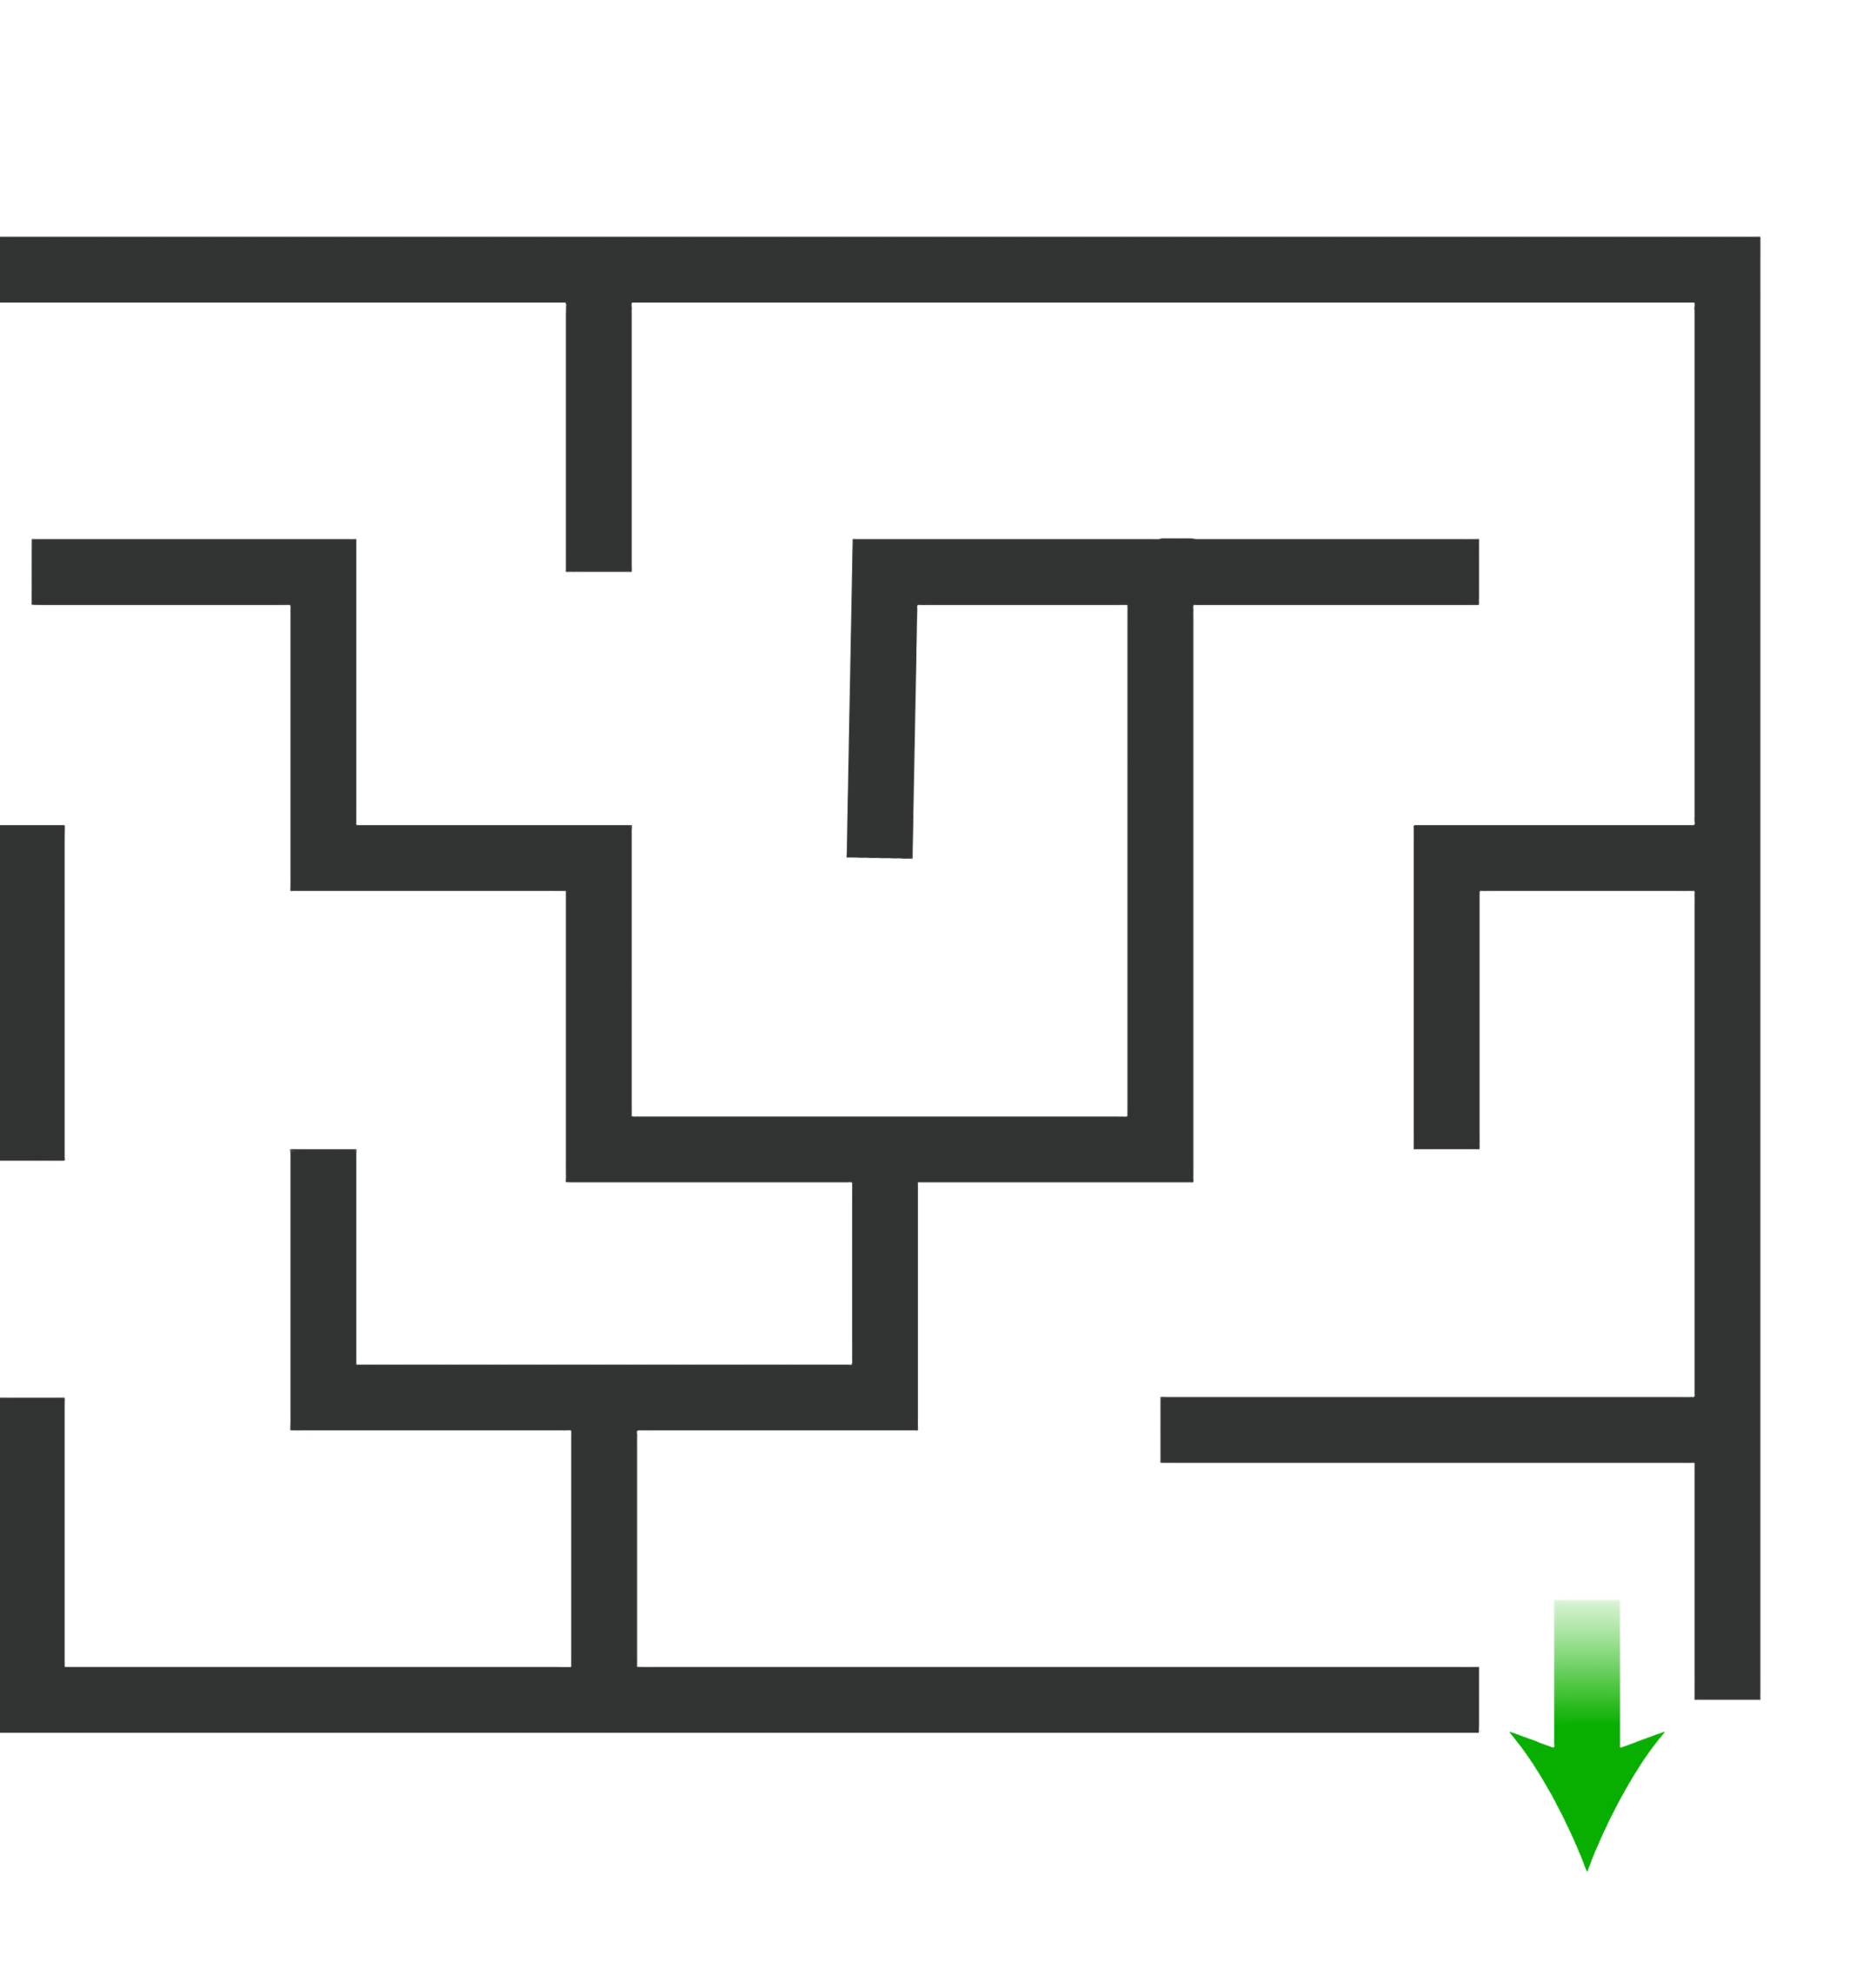 Jogos de Labirinto